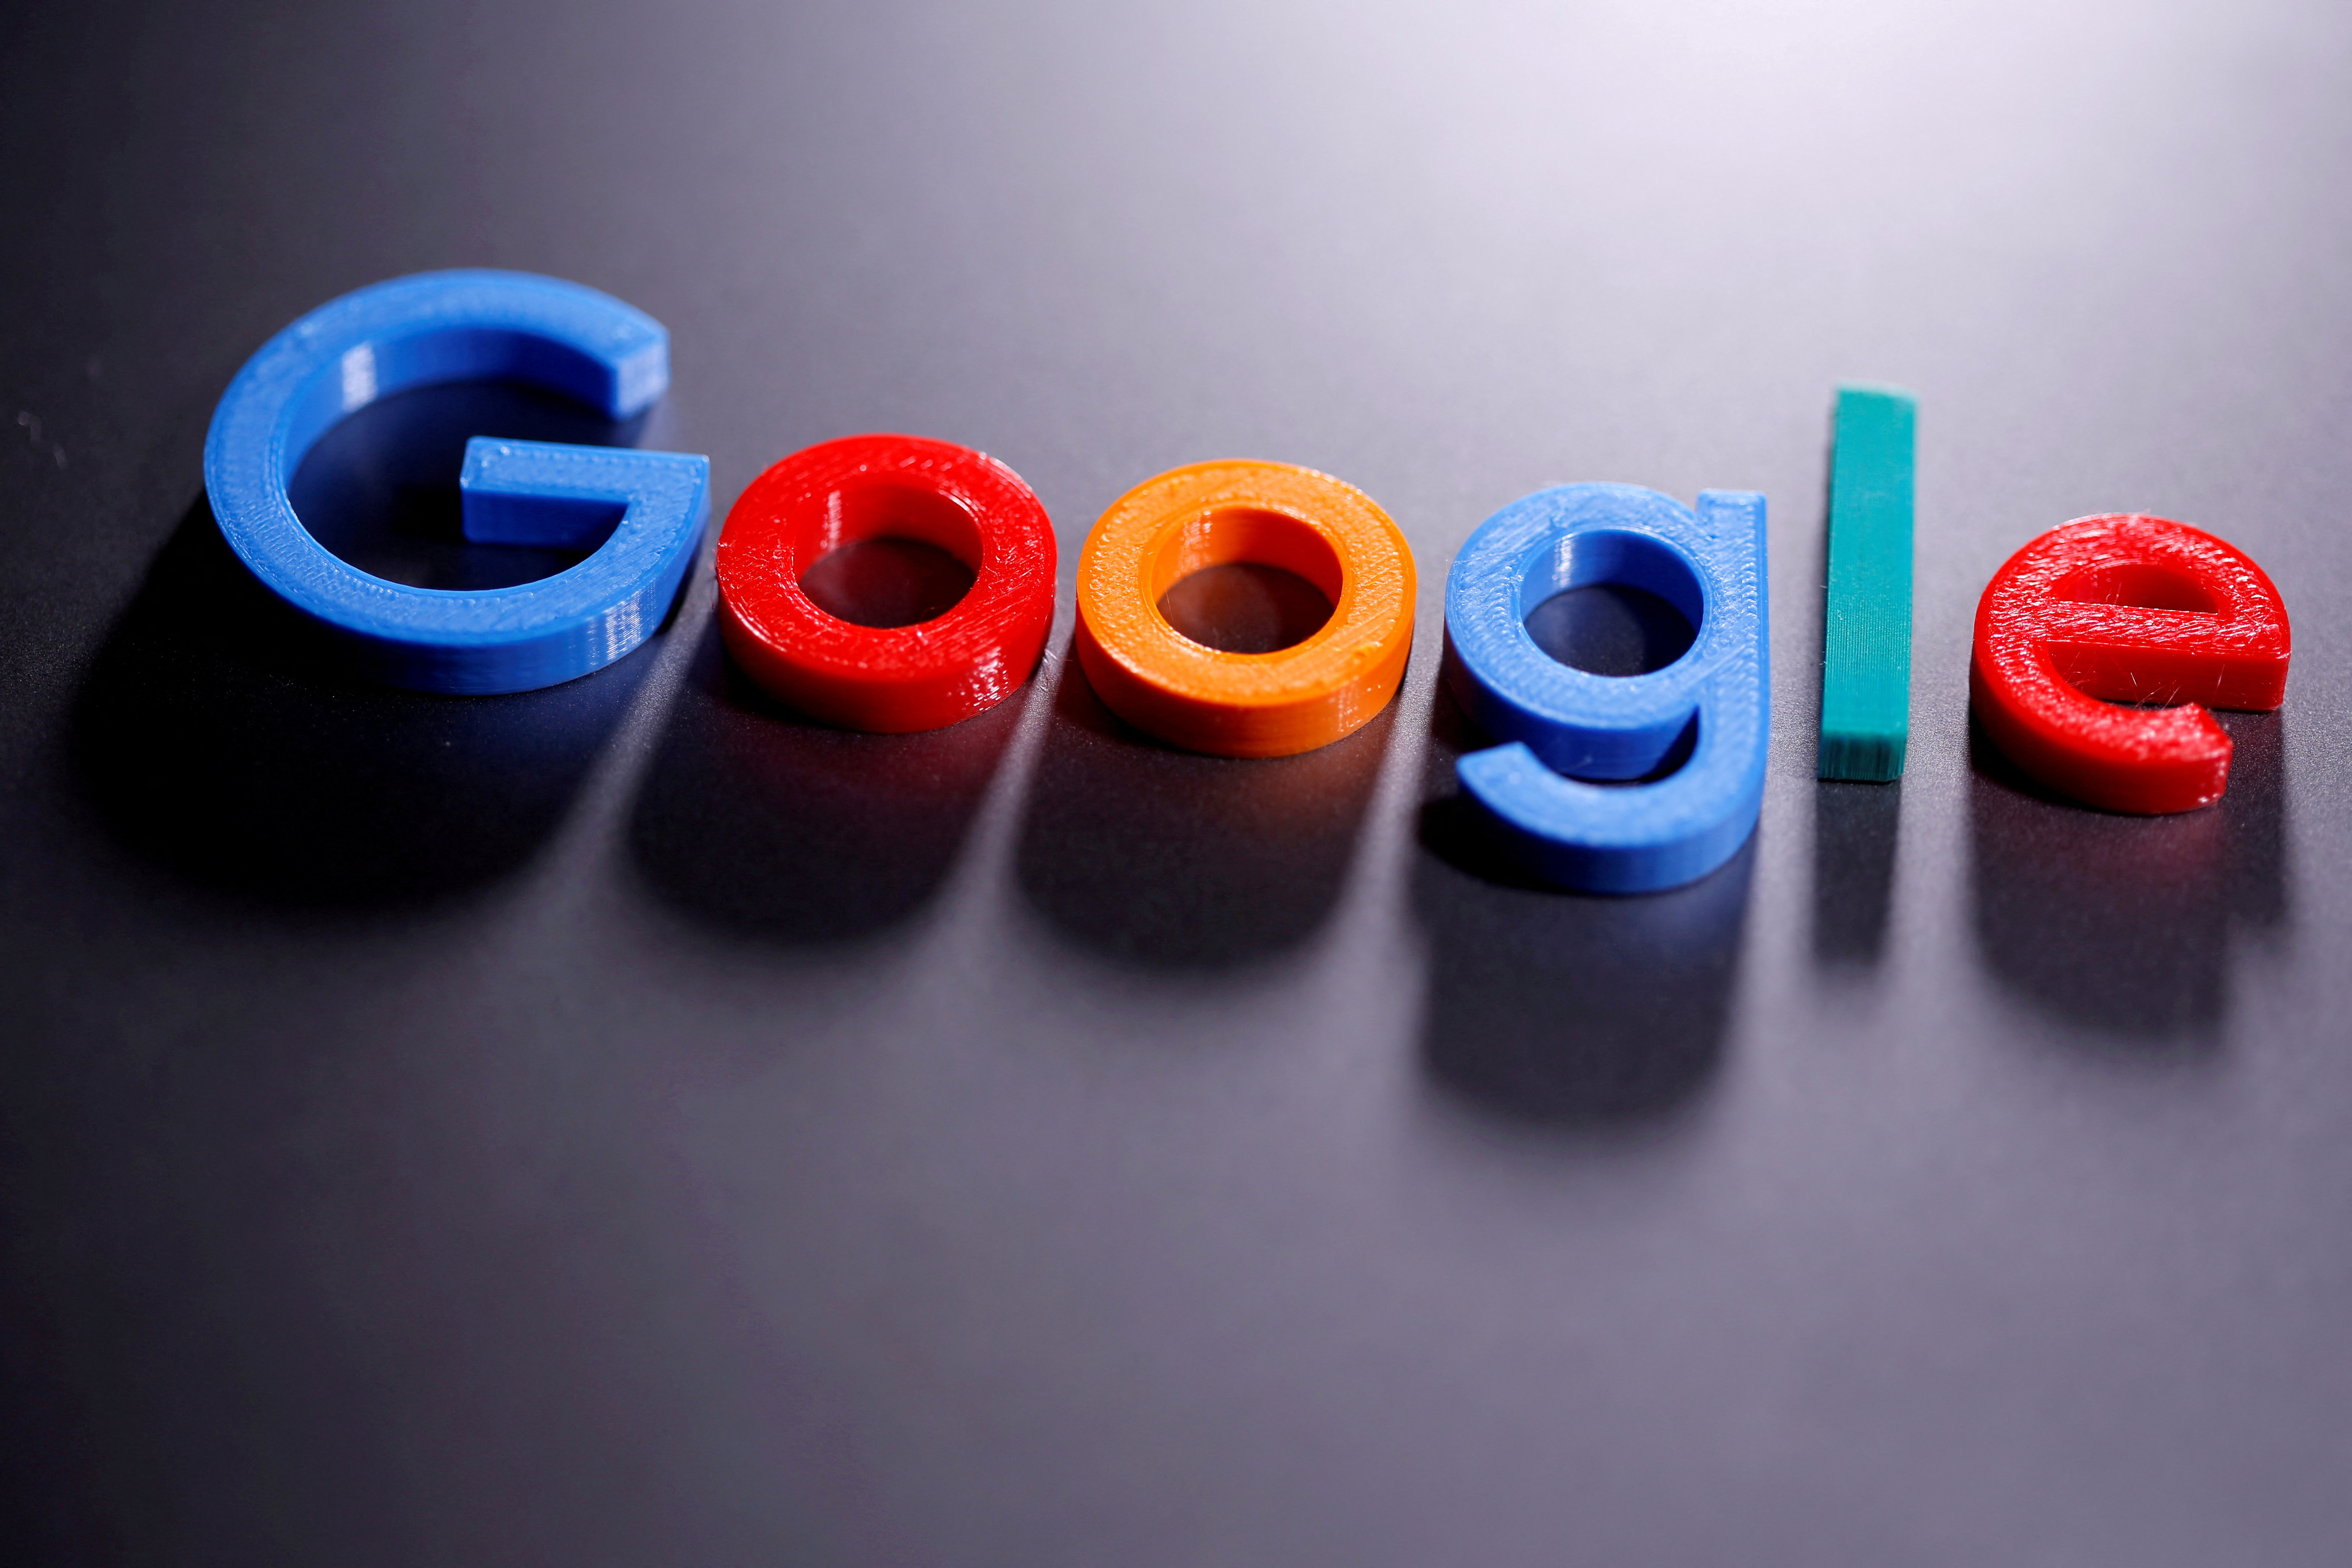 پای ۹ ایالت آمریکا به شکایت آنتی تراست علیه گوگل باز شد
